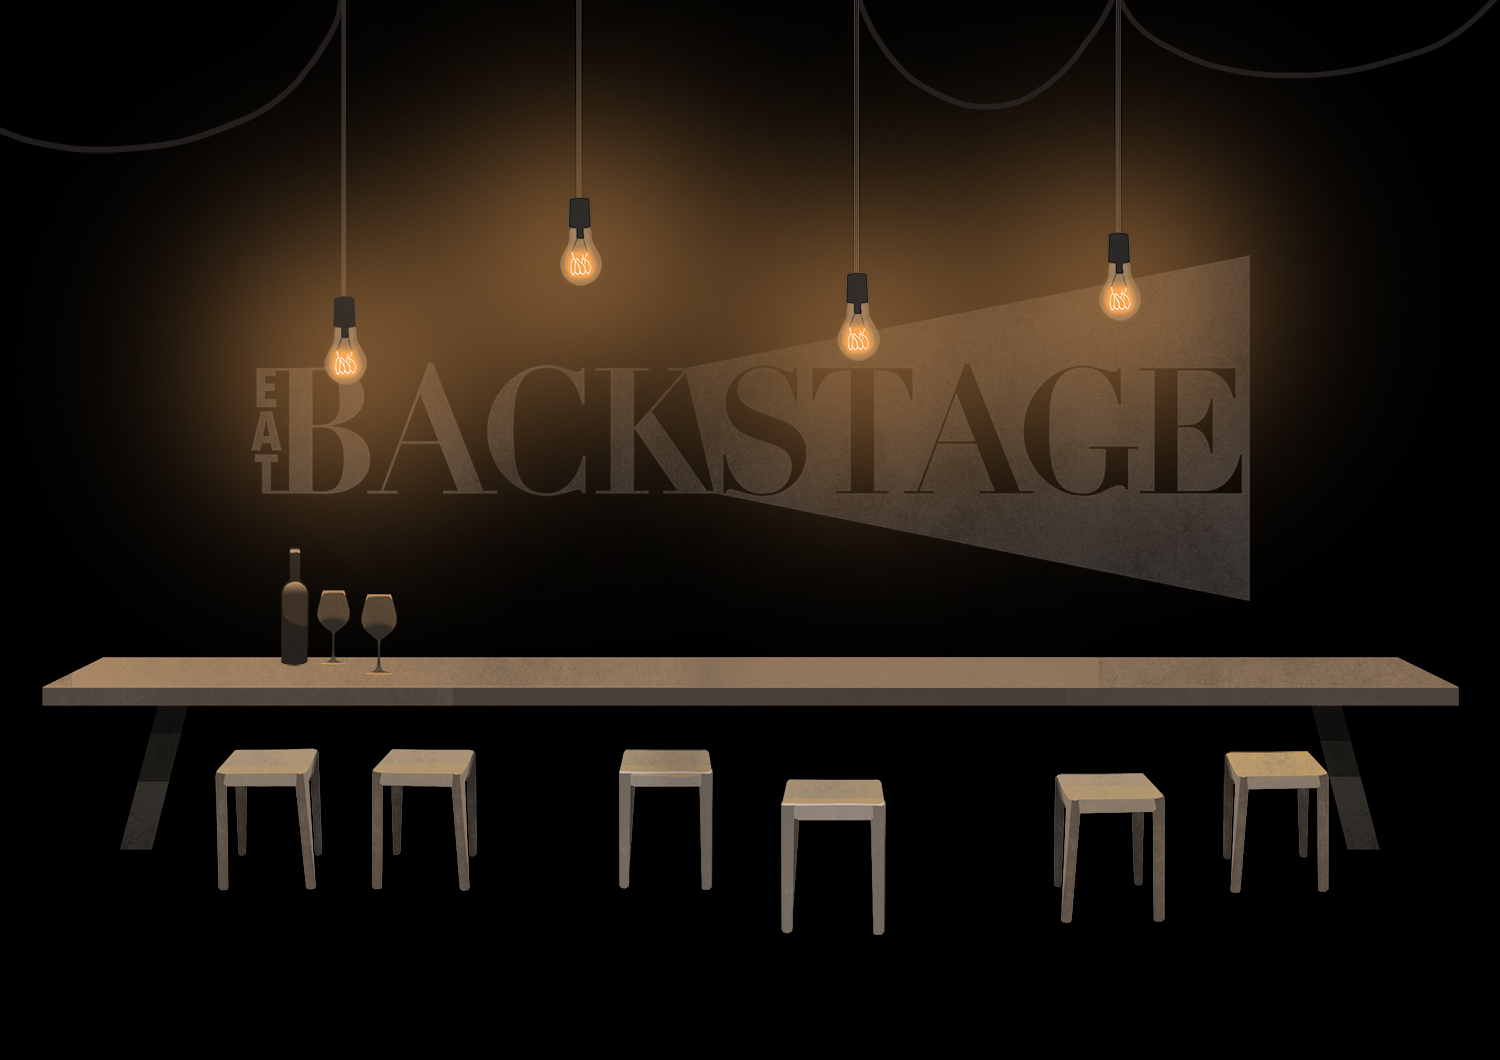 Illustration for the Eat Backstage website